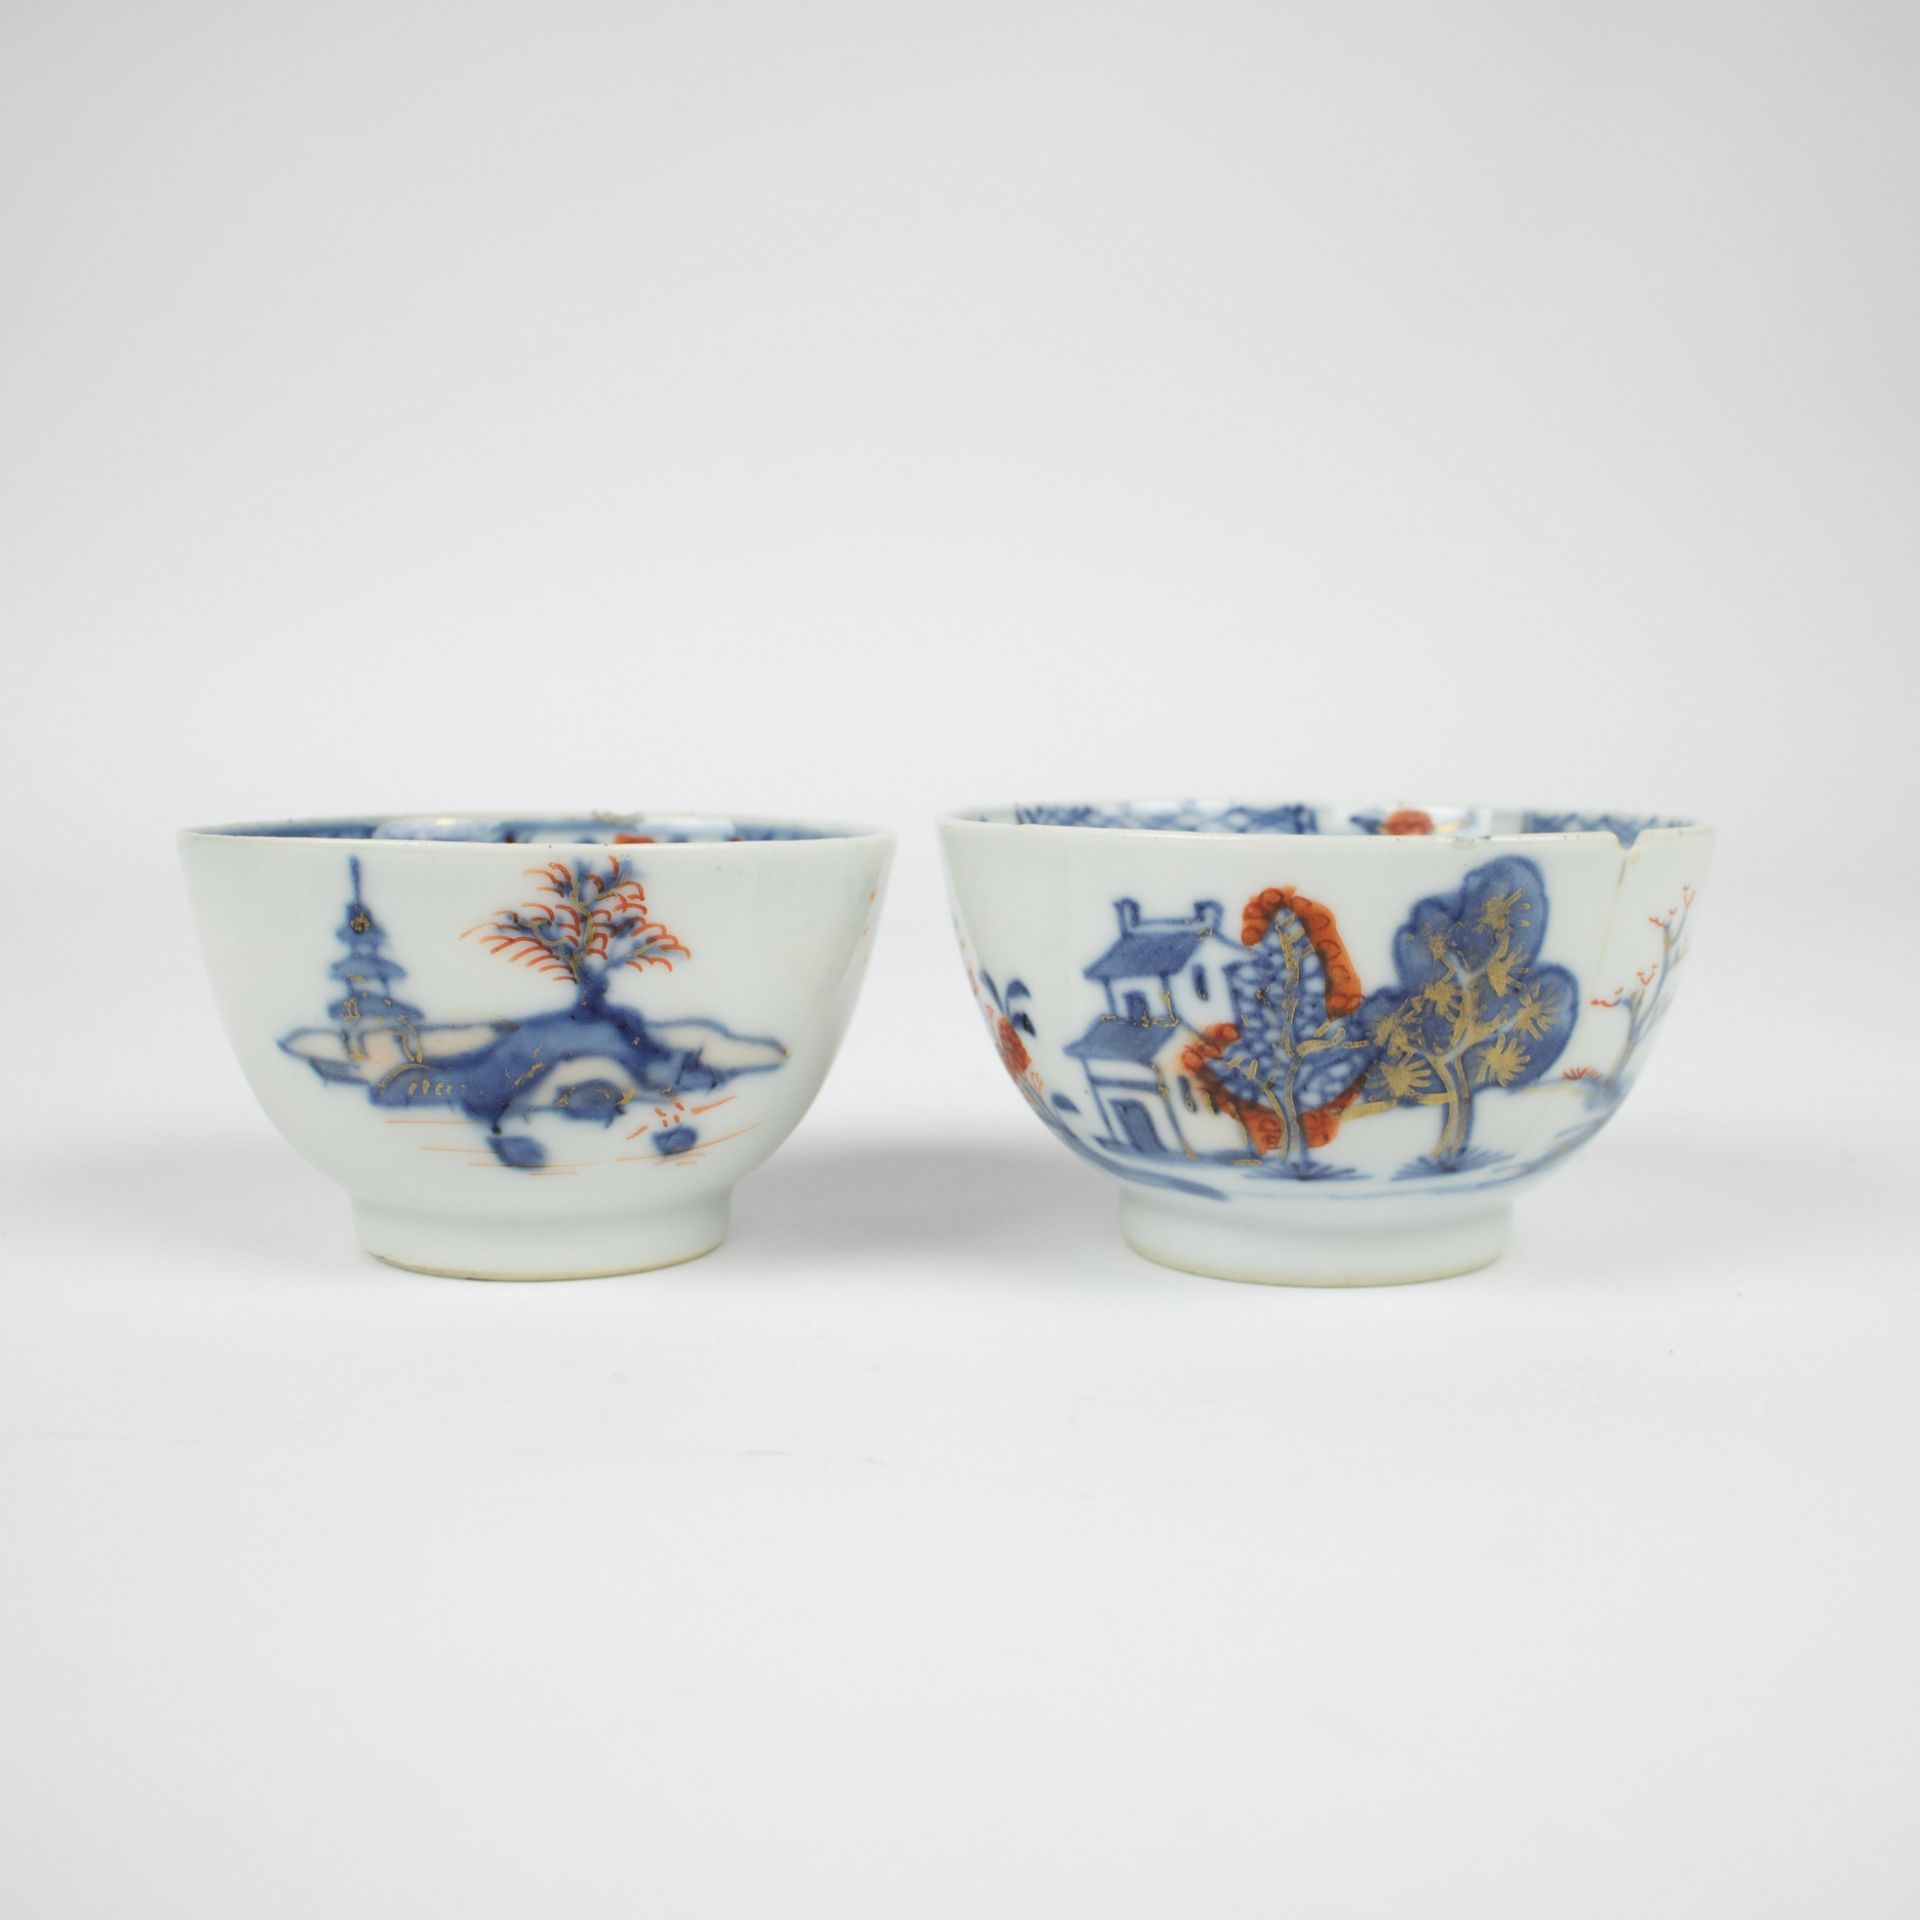 Chinese Imari porcelain, 18e century - Image 8 of 9